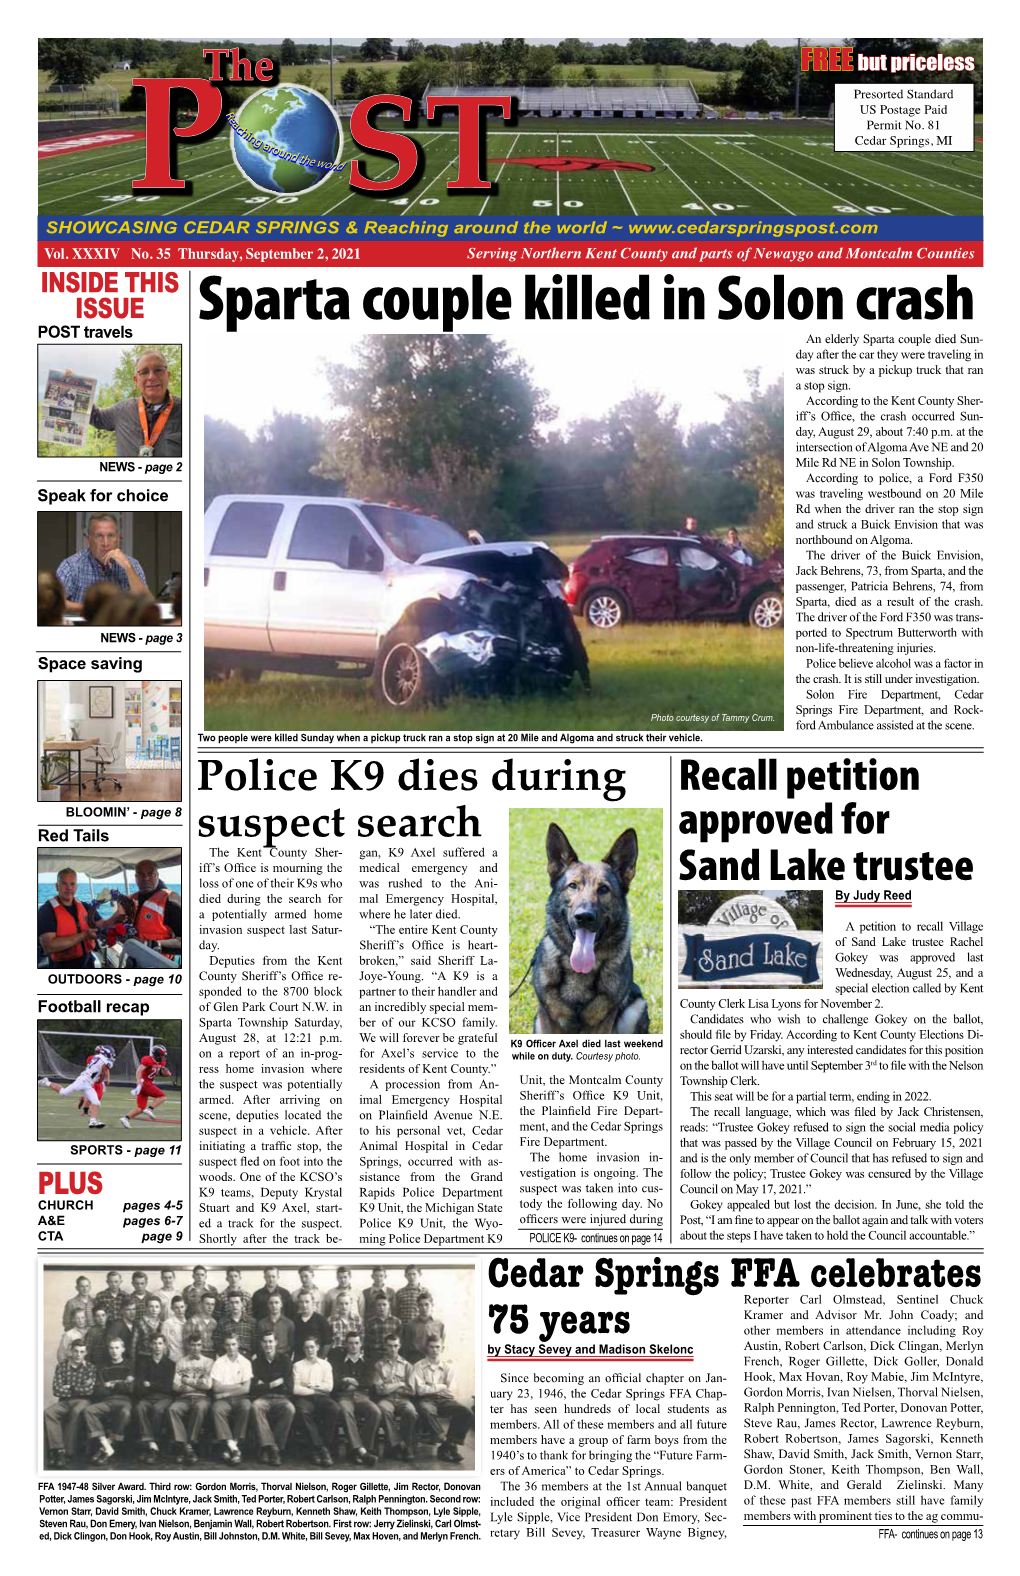 Sparta Couple Killed in Solon Crash